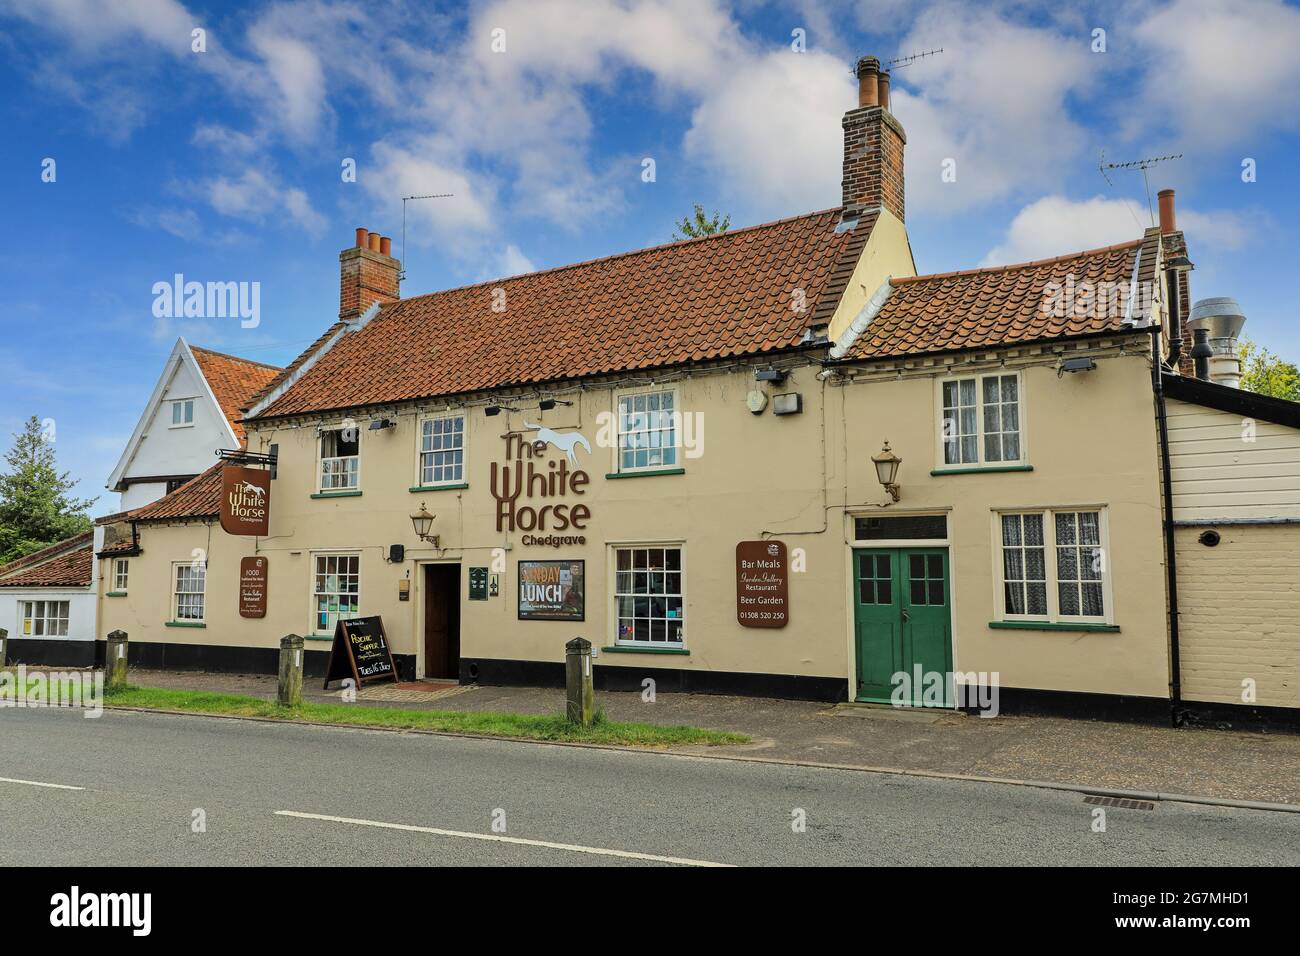 The White Horse pub, auberge ou maison publique à Chedgrave, Norfolk, Angleterre, Royaume-Uni Banque D'Images